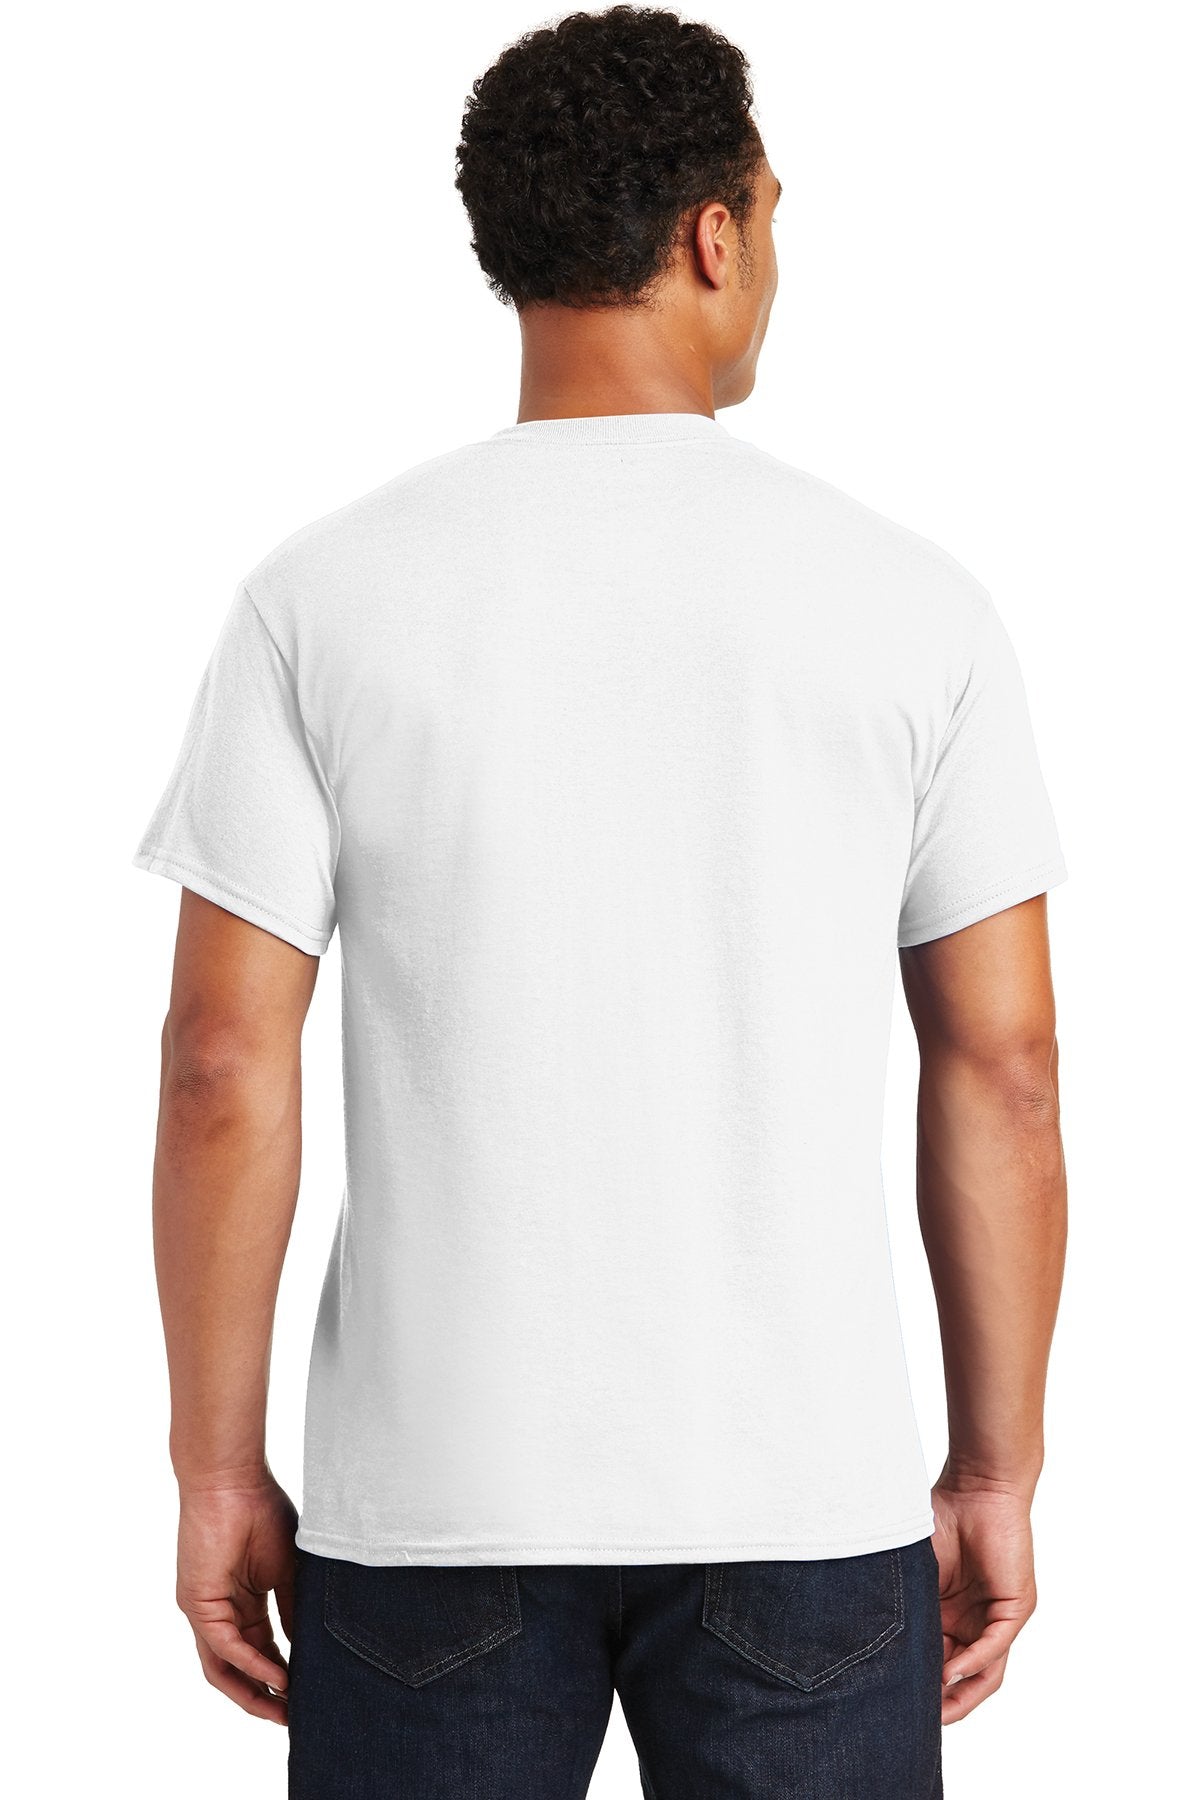 gildan dryblend cotton poly t shirt 8000 white